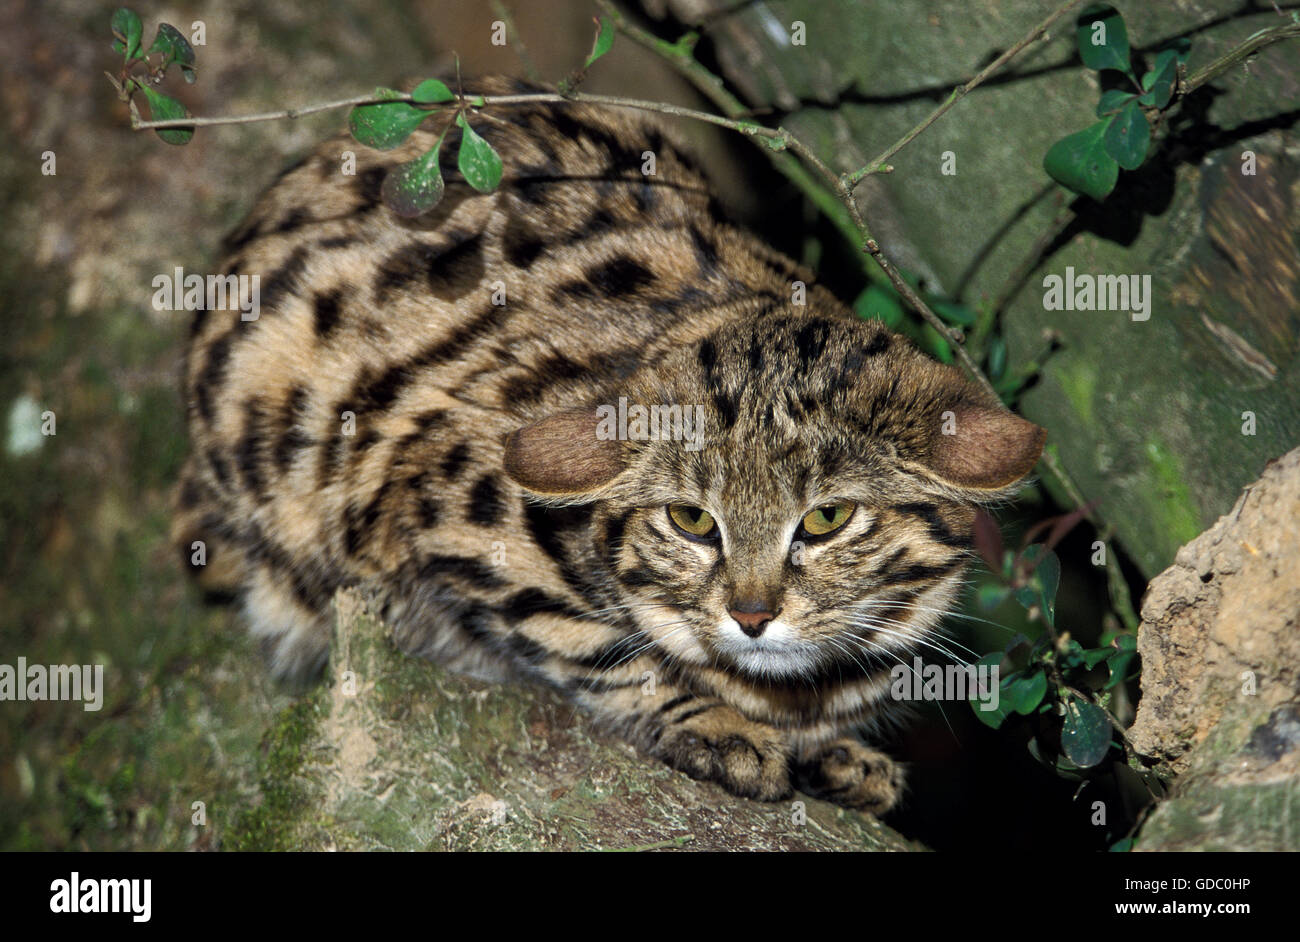 Patas negras felis nigripes, gato adulto, sentando en la rama Foto de stock